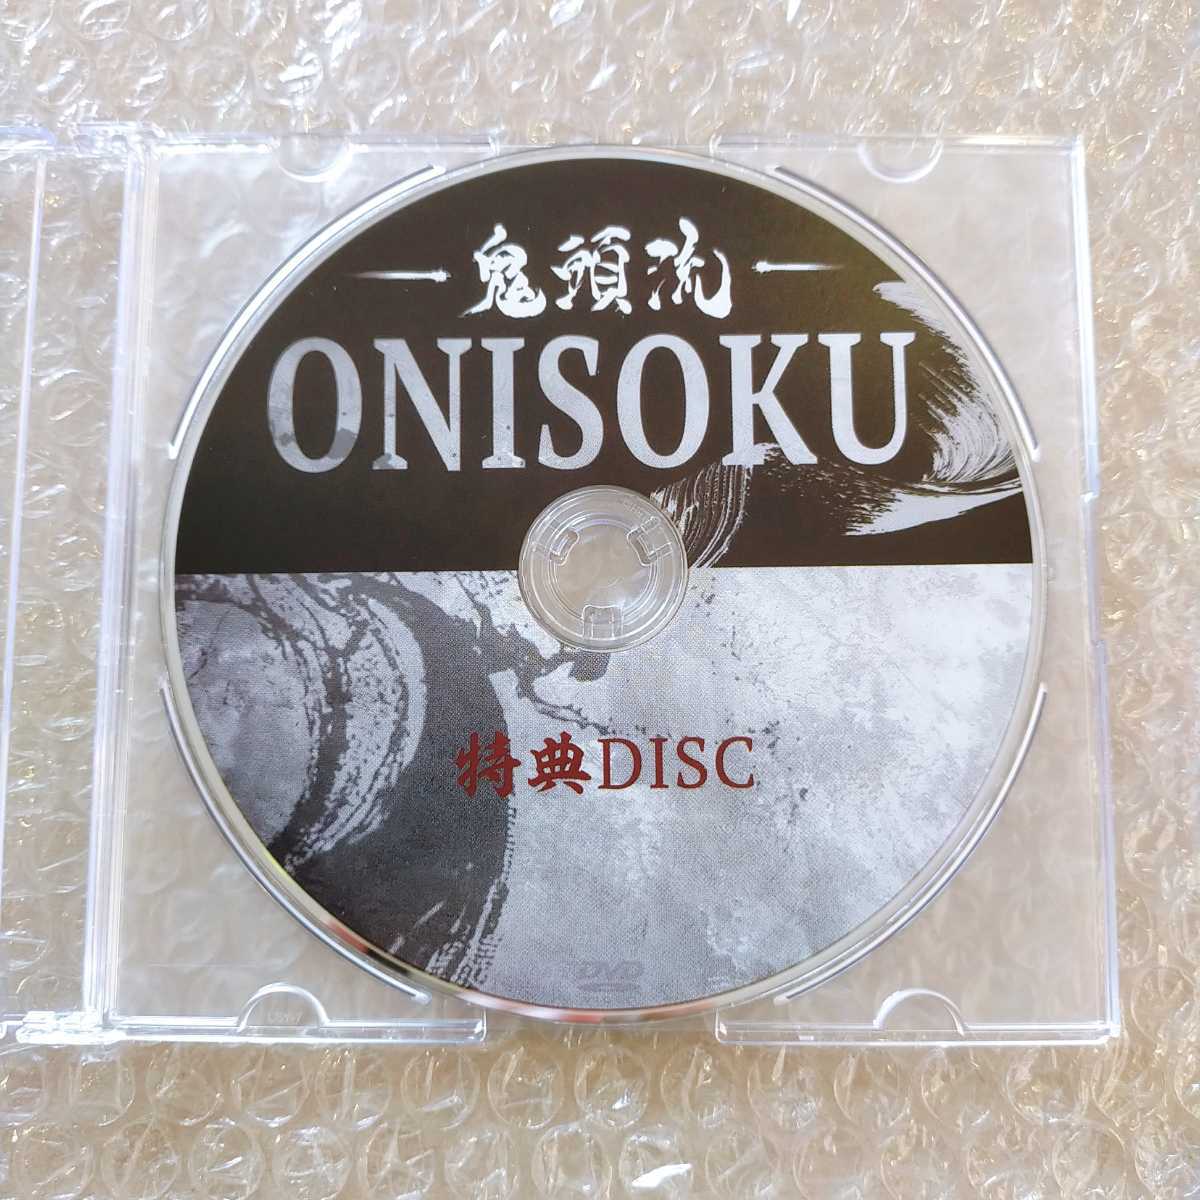 鬼頭紀幸の鬼頭流-ONISOKU-DVD フルセット - www.onkajans.com